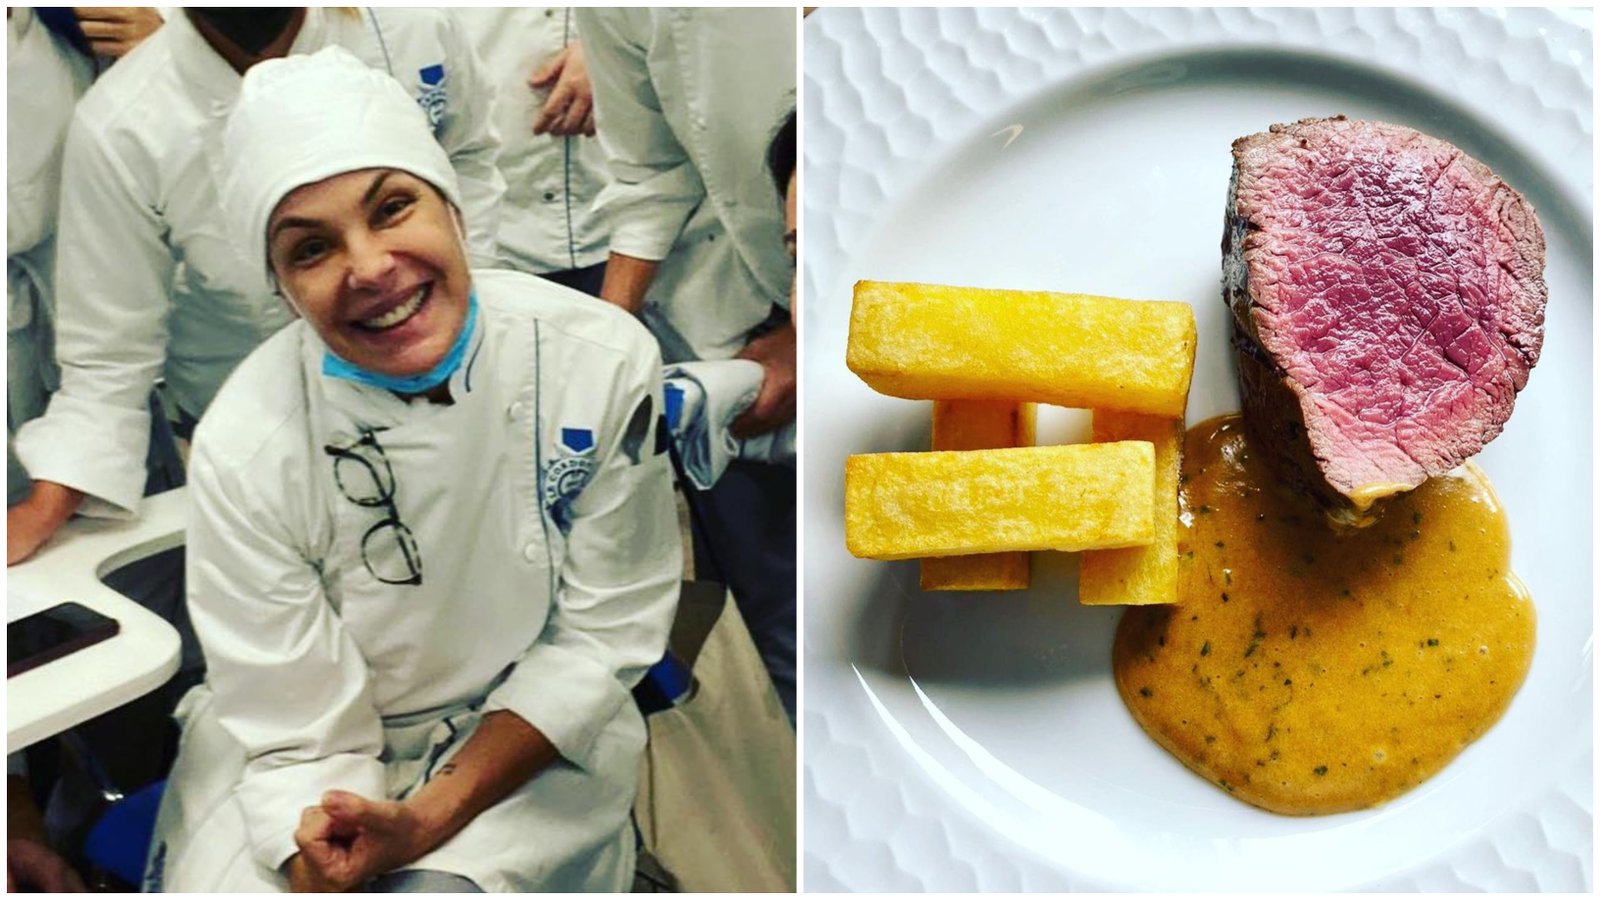 Consagrada como atriz, Carolina Ferraz está se reinventando e virando chef profissional